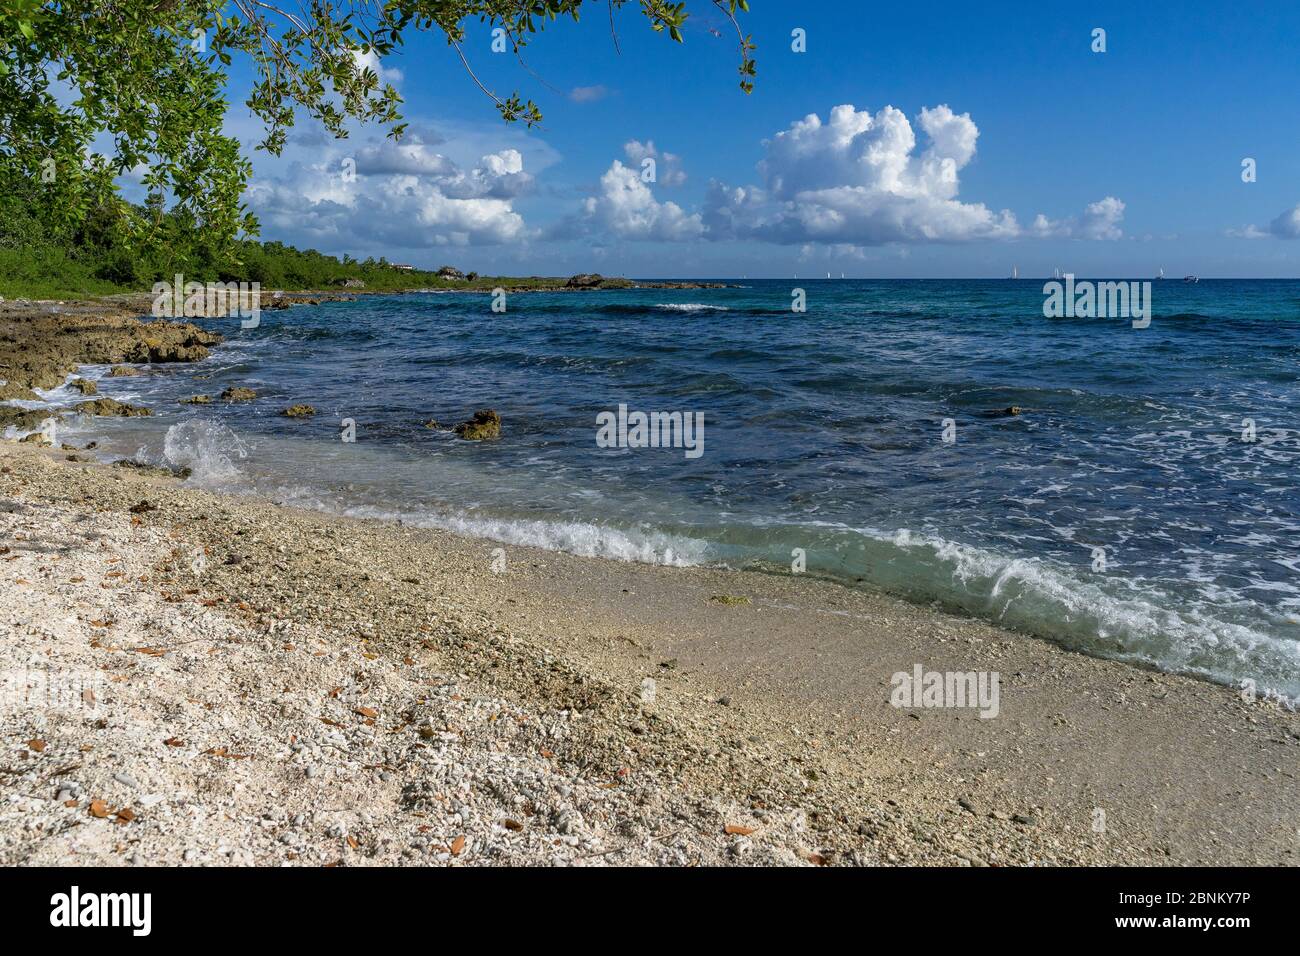 América, Caribe, Antillas mayores, República Dominicana, Provincia de la Altagracia, Bayahibe, Playa Magallanes Foto de stock